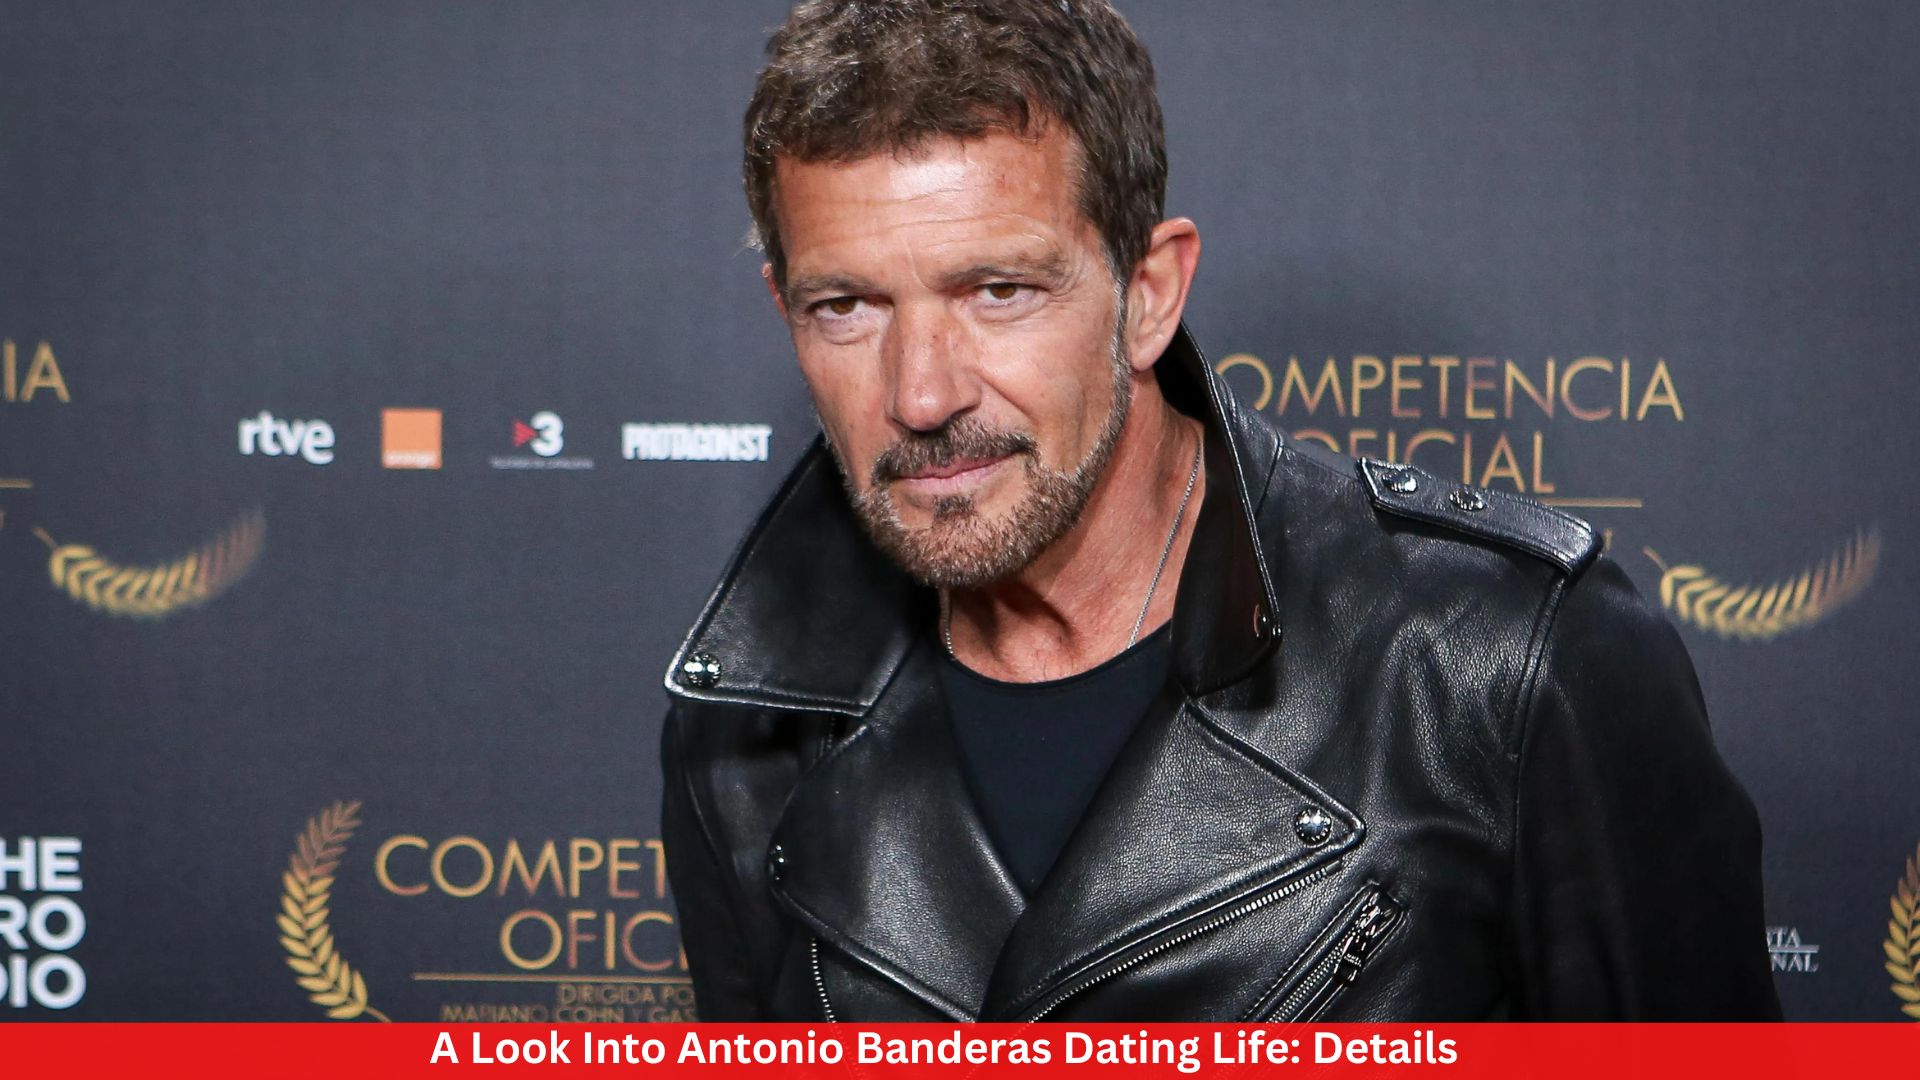 A Look Into Antonio Banderas Dating Life: Details